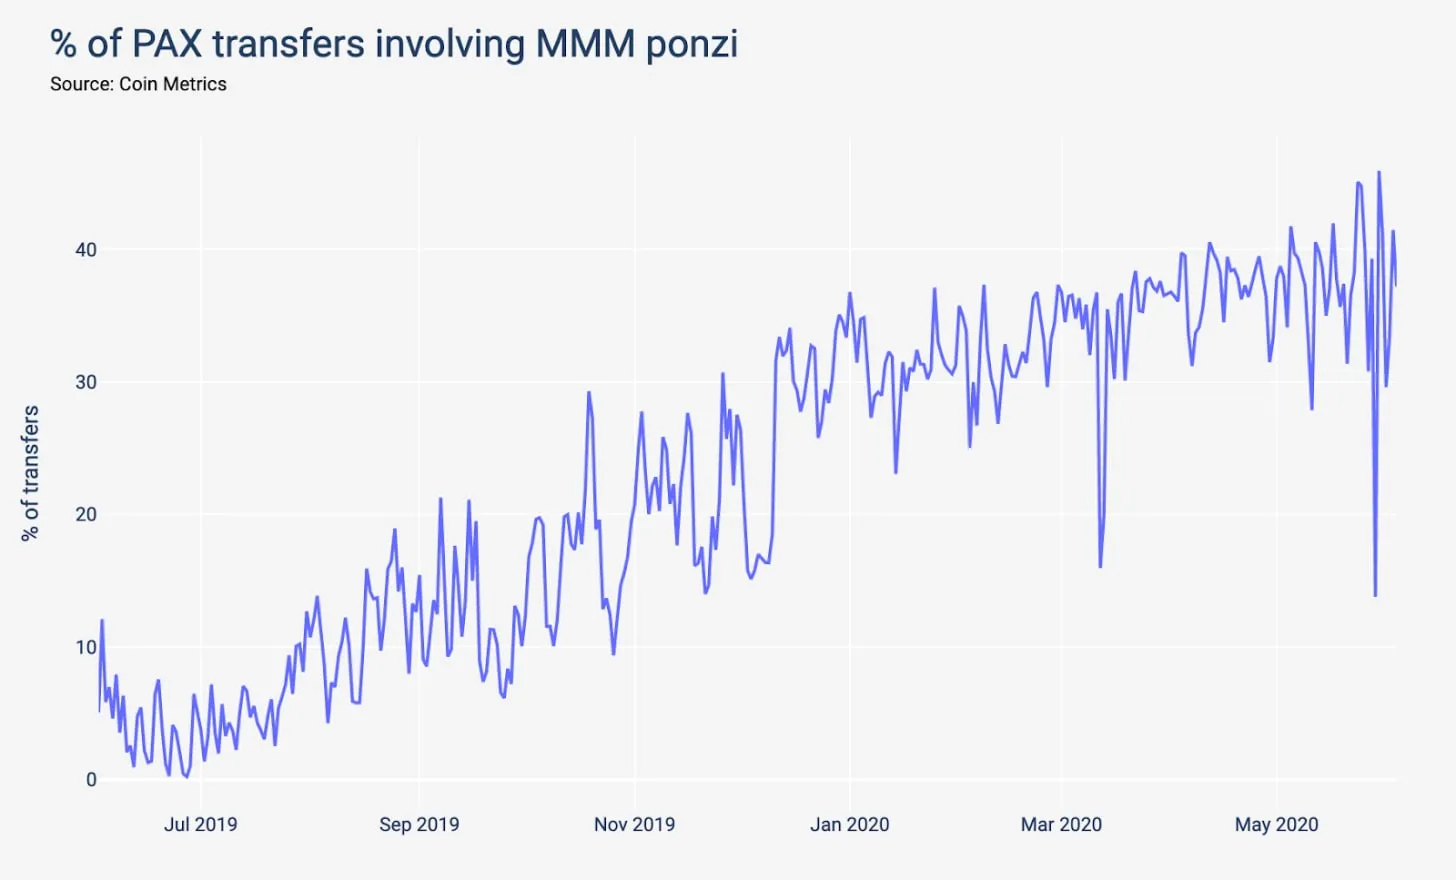 transferencias de PAX relacionadas con el esquema Ponzi MMM. Fuente: Coin Metrics